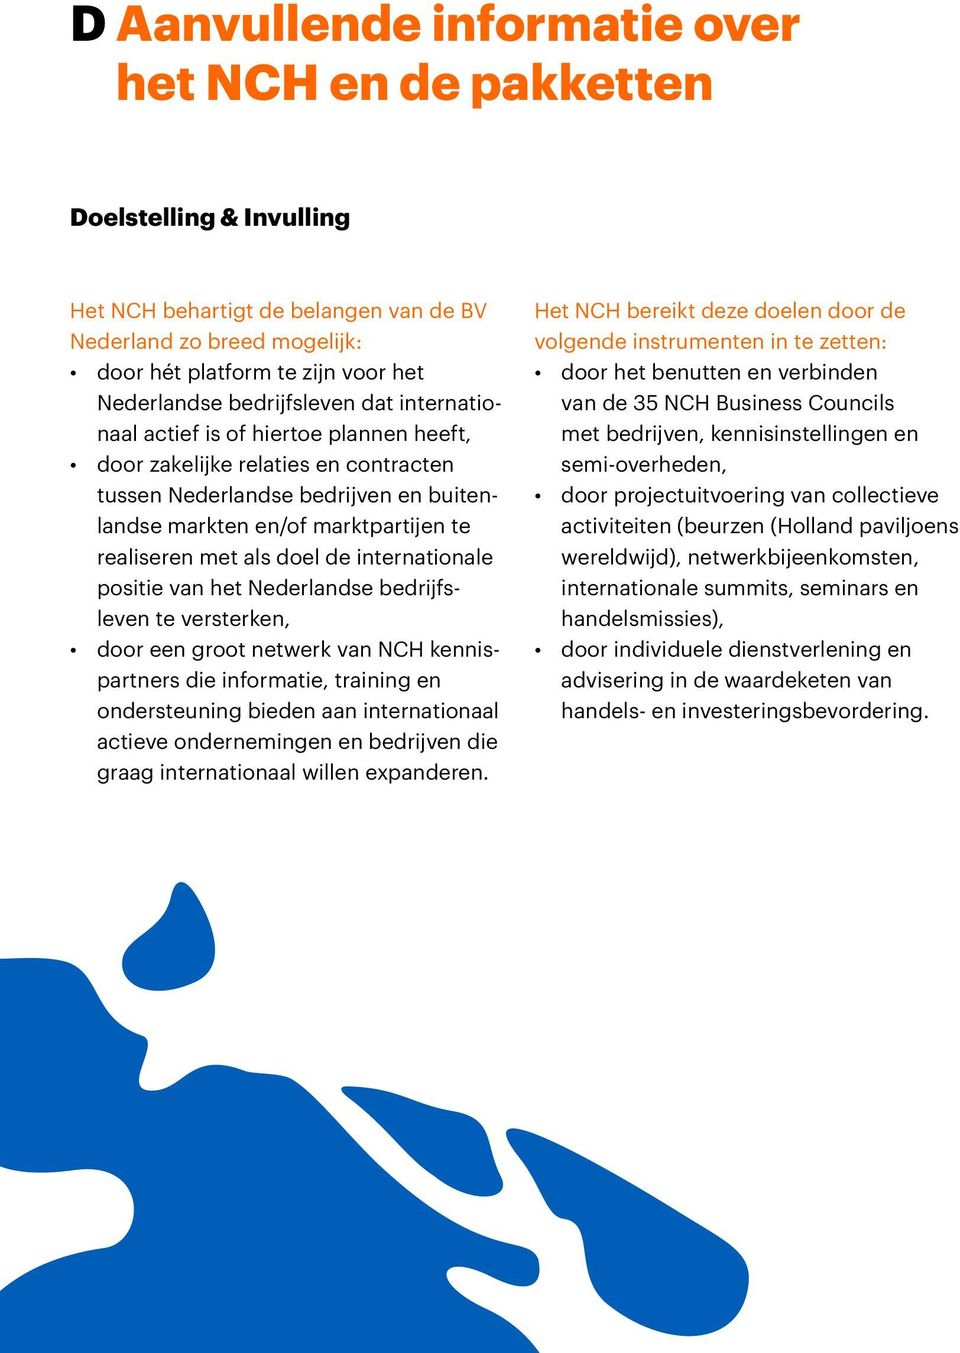 als doel de internationale positie van het Nederlandse bedrijfsleven te versterken, door een groot netwerk van NCH kennispartners die informatie, training en ondersteuning bieden aan internationaal